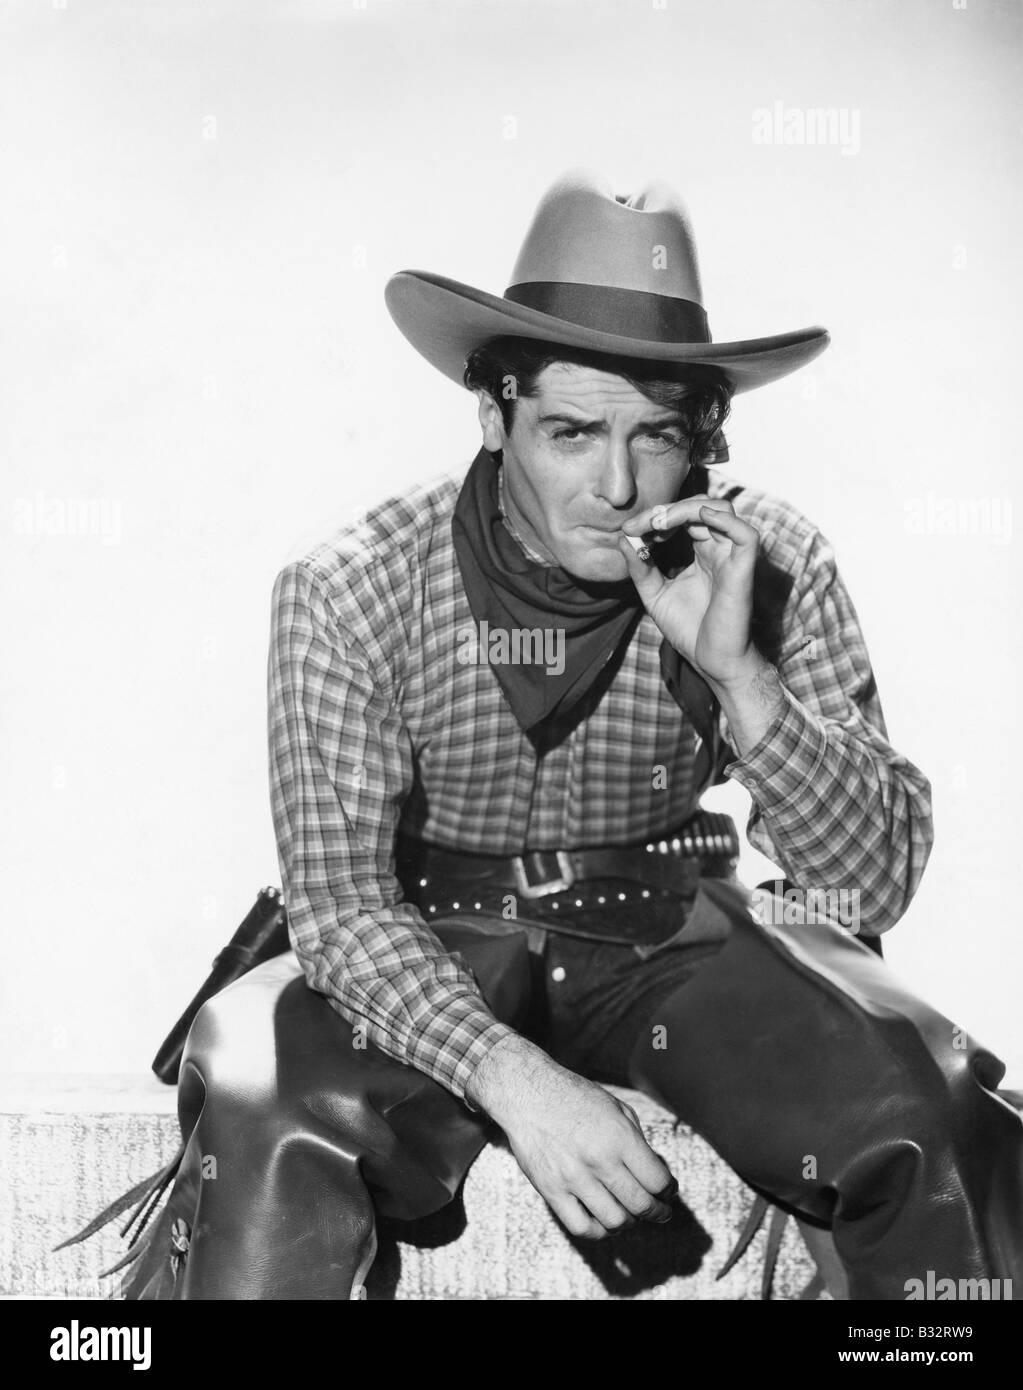 Cowboy mit einem Cowboy-Hut, eine Zigarette rauchend Stockfoto